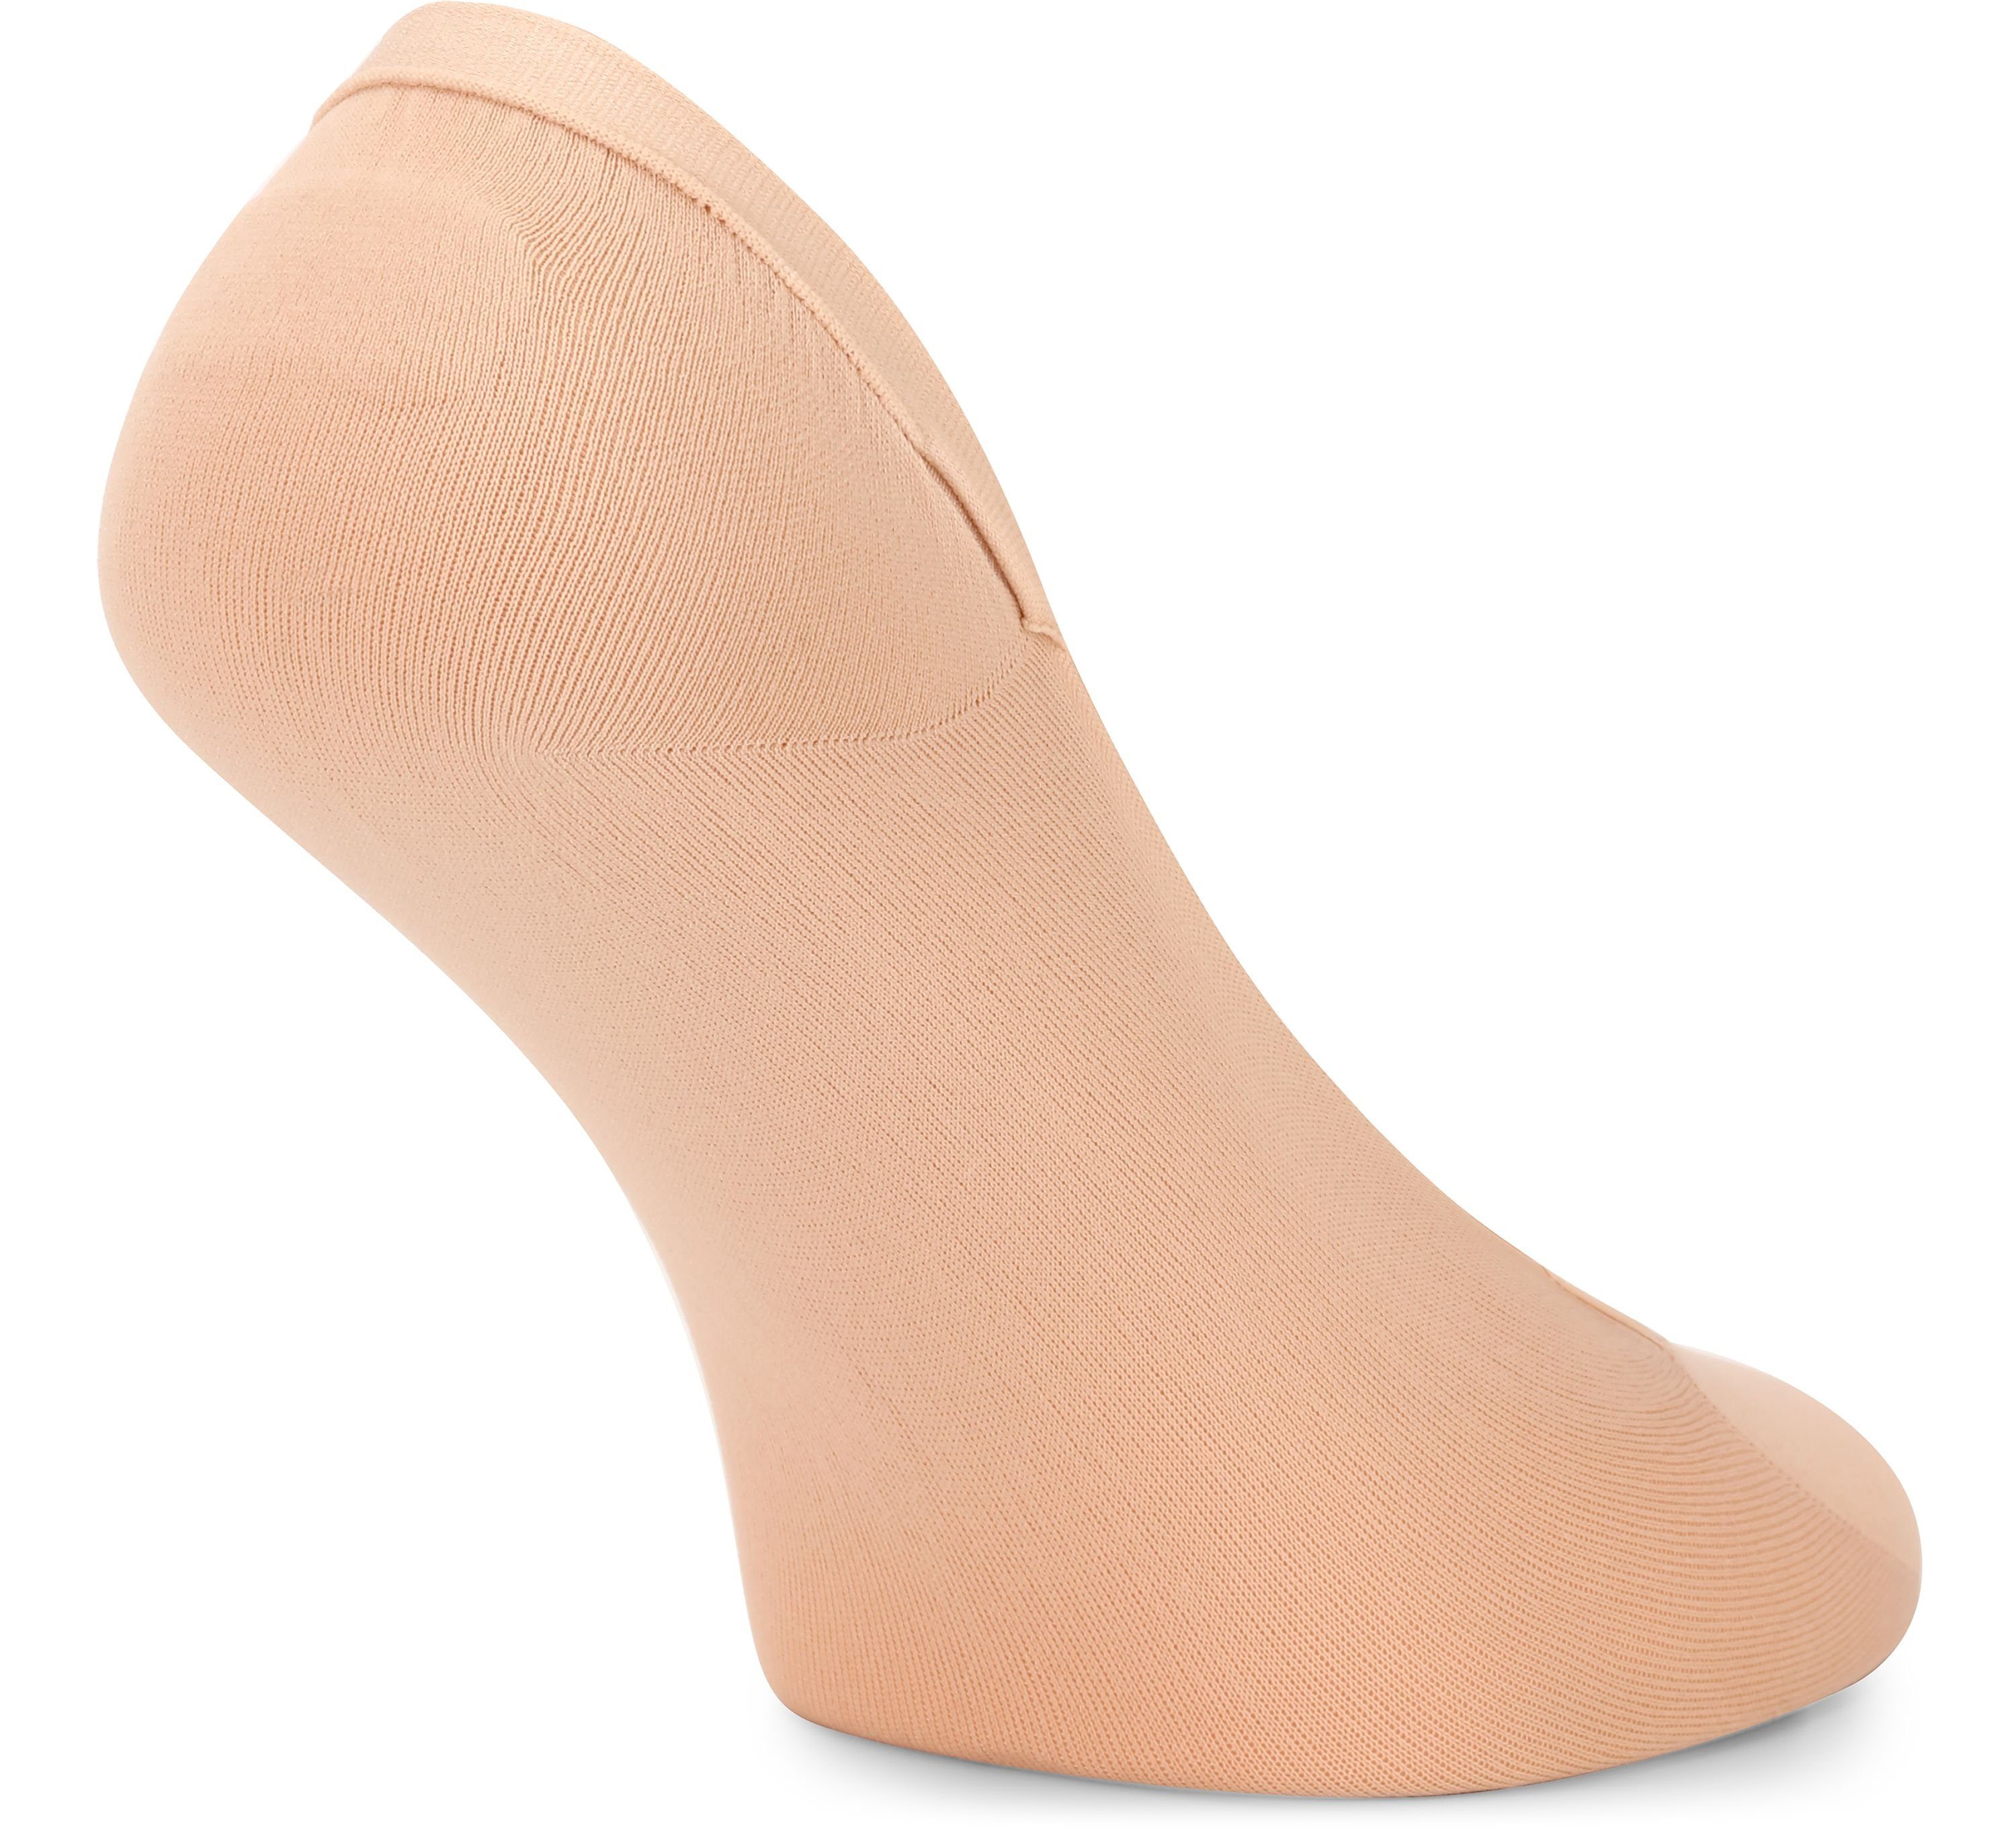 Sneaker Socken Merry Style - Schwarz/Beige Socken Atmungsaktive 4Pack Halbsocken MSGI046 Füßlinge Damen